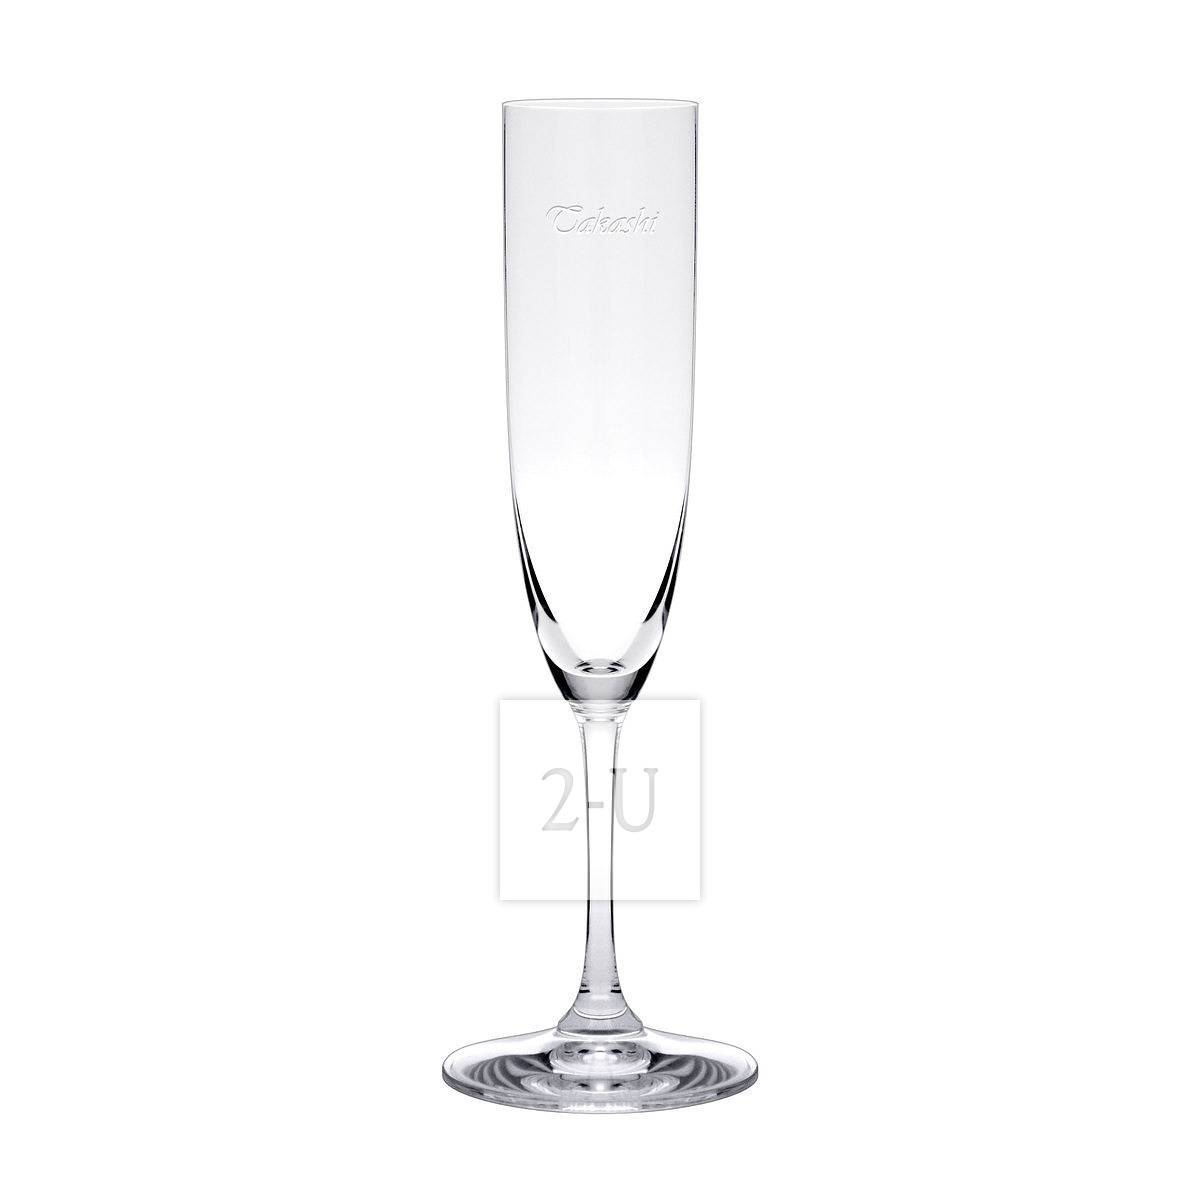 奧地利力多 Riedel Vinum 係列水晶香檳杯